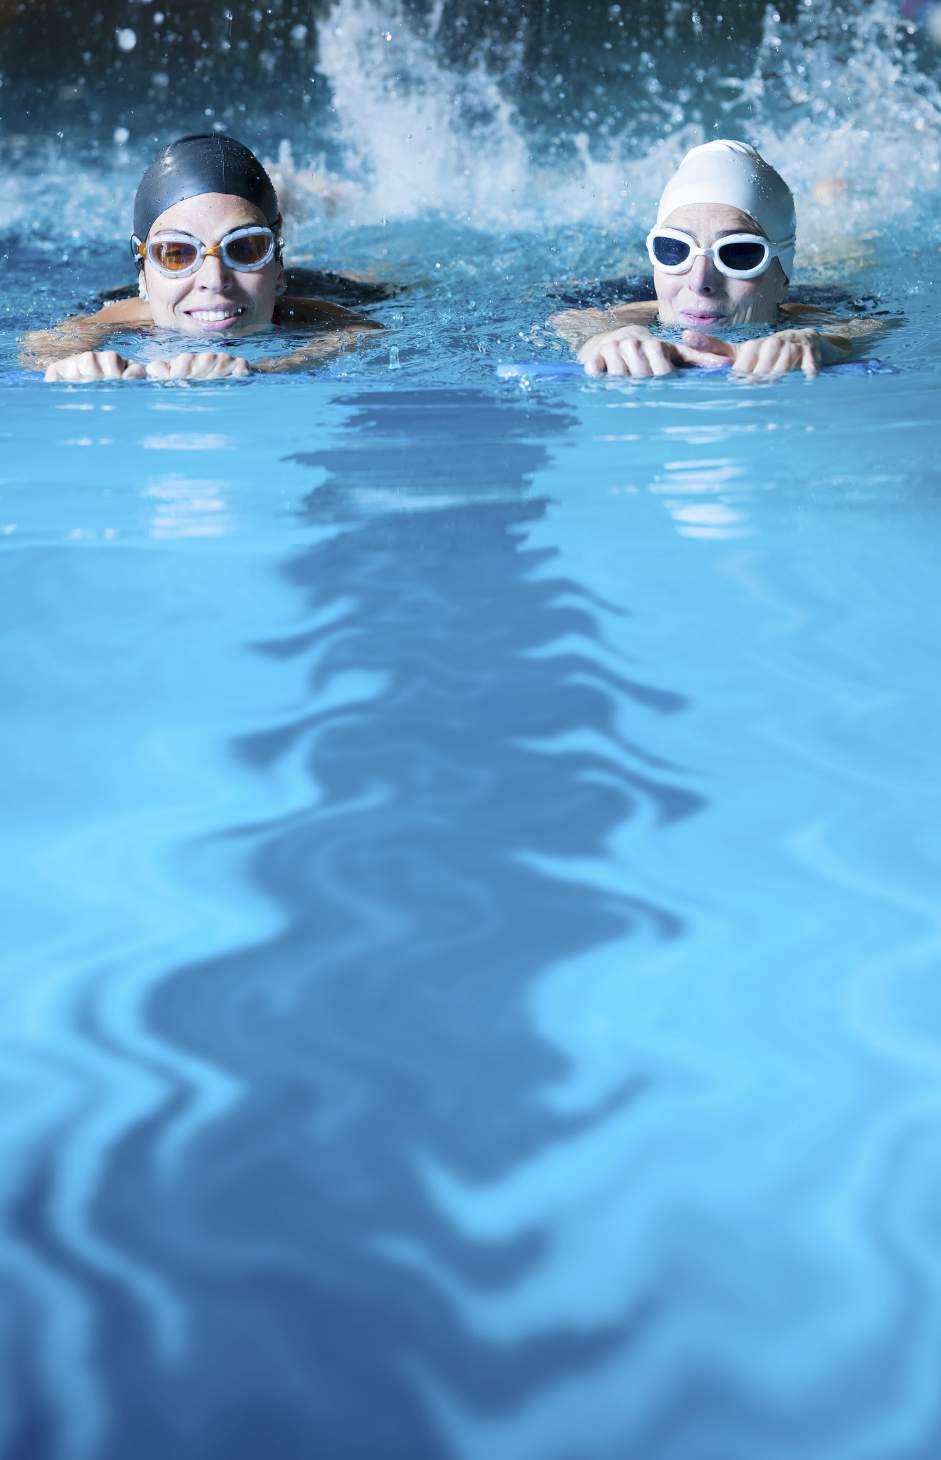 Ez az úszás5legfontosabb előnye 1. Átmozgatja az egész testet Az úszás szinte az egyetlen olyan mozgásforma, amely minden izmot mozgásba hoz, és így a teljes testre hatással van.